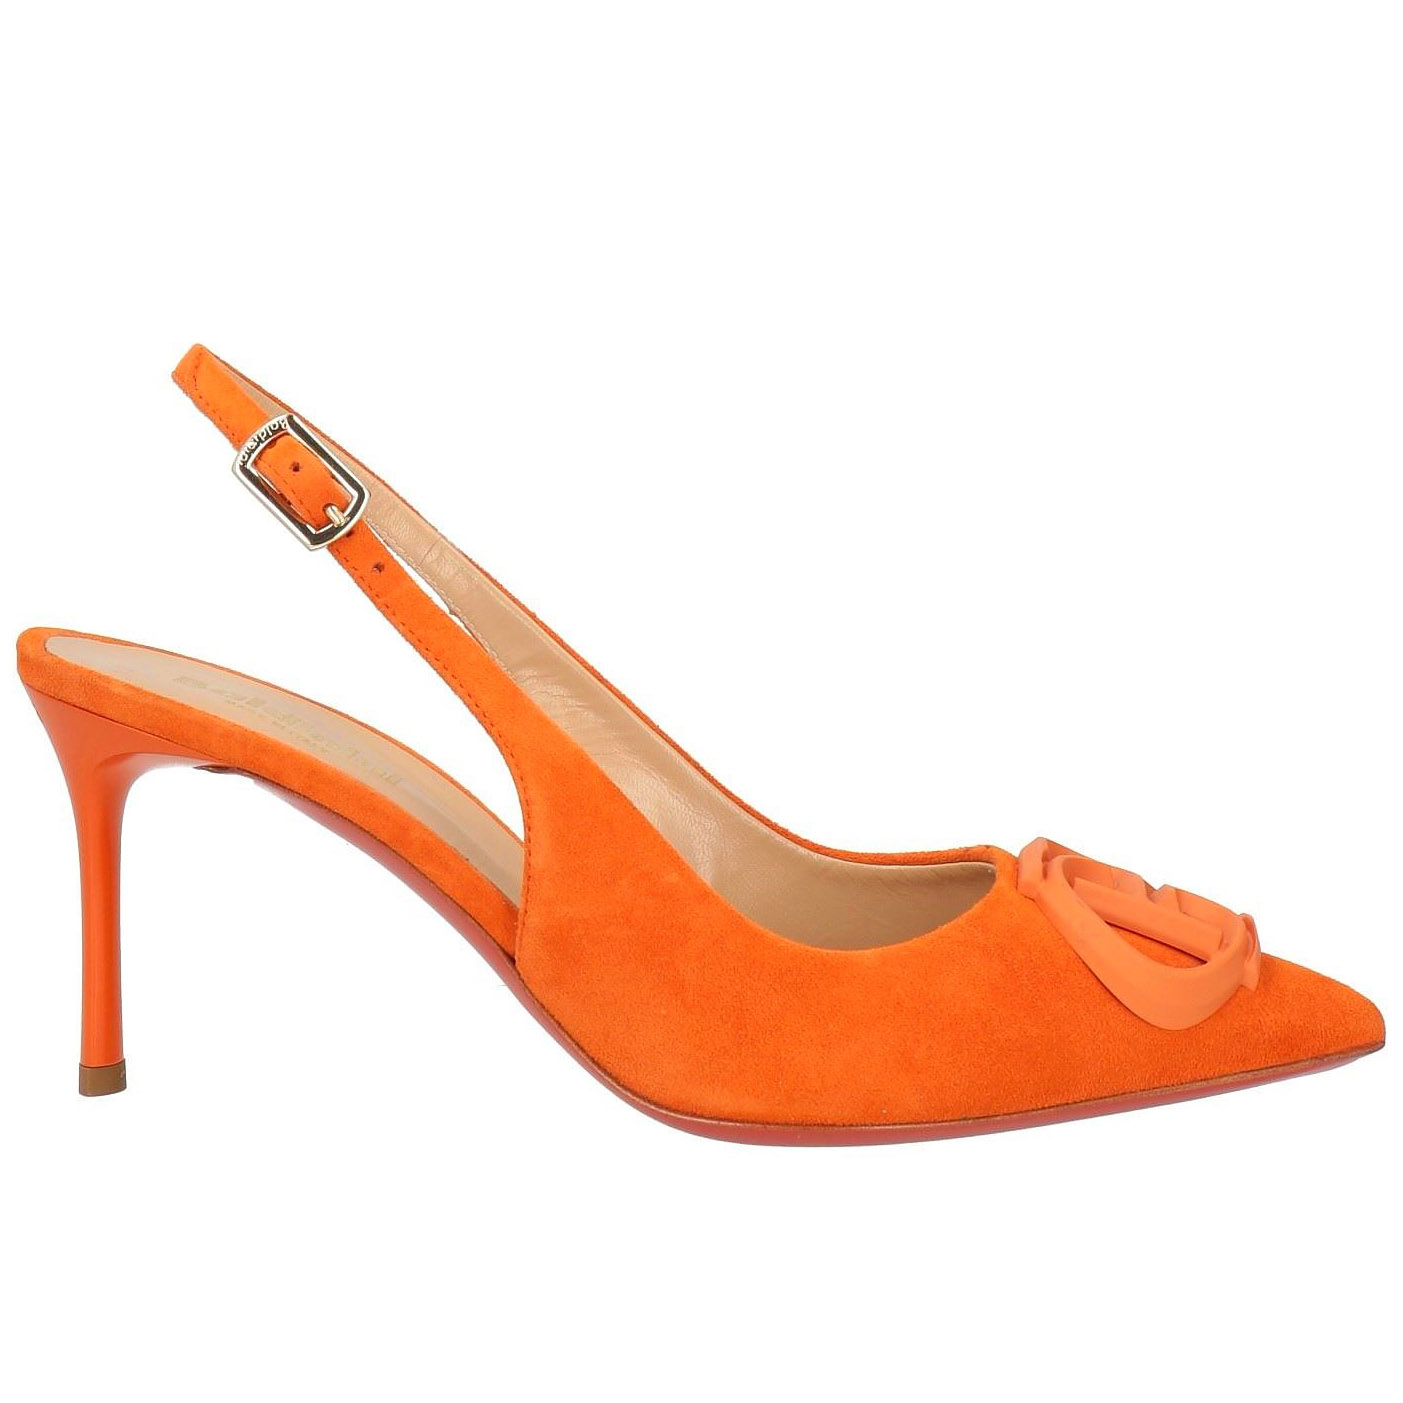 Туфли Baldinini, оранжевый туфли на высоком каблуке 18 см туфли на высоком каблуке туфли на высоком каблуке подмодели для съемки фотографий танцевальная обувь